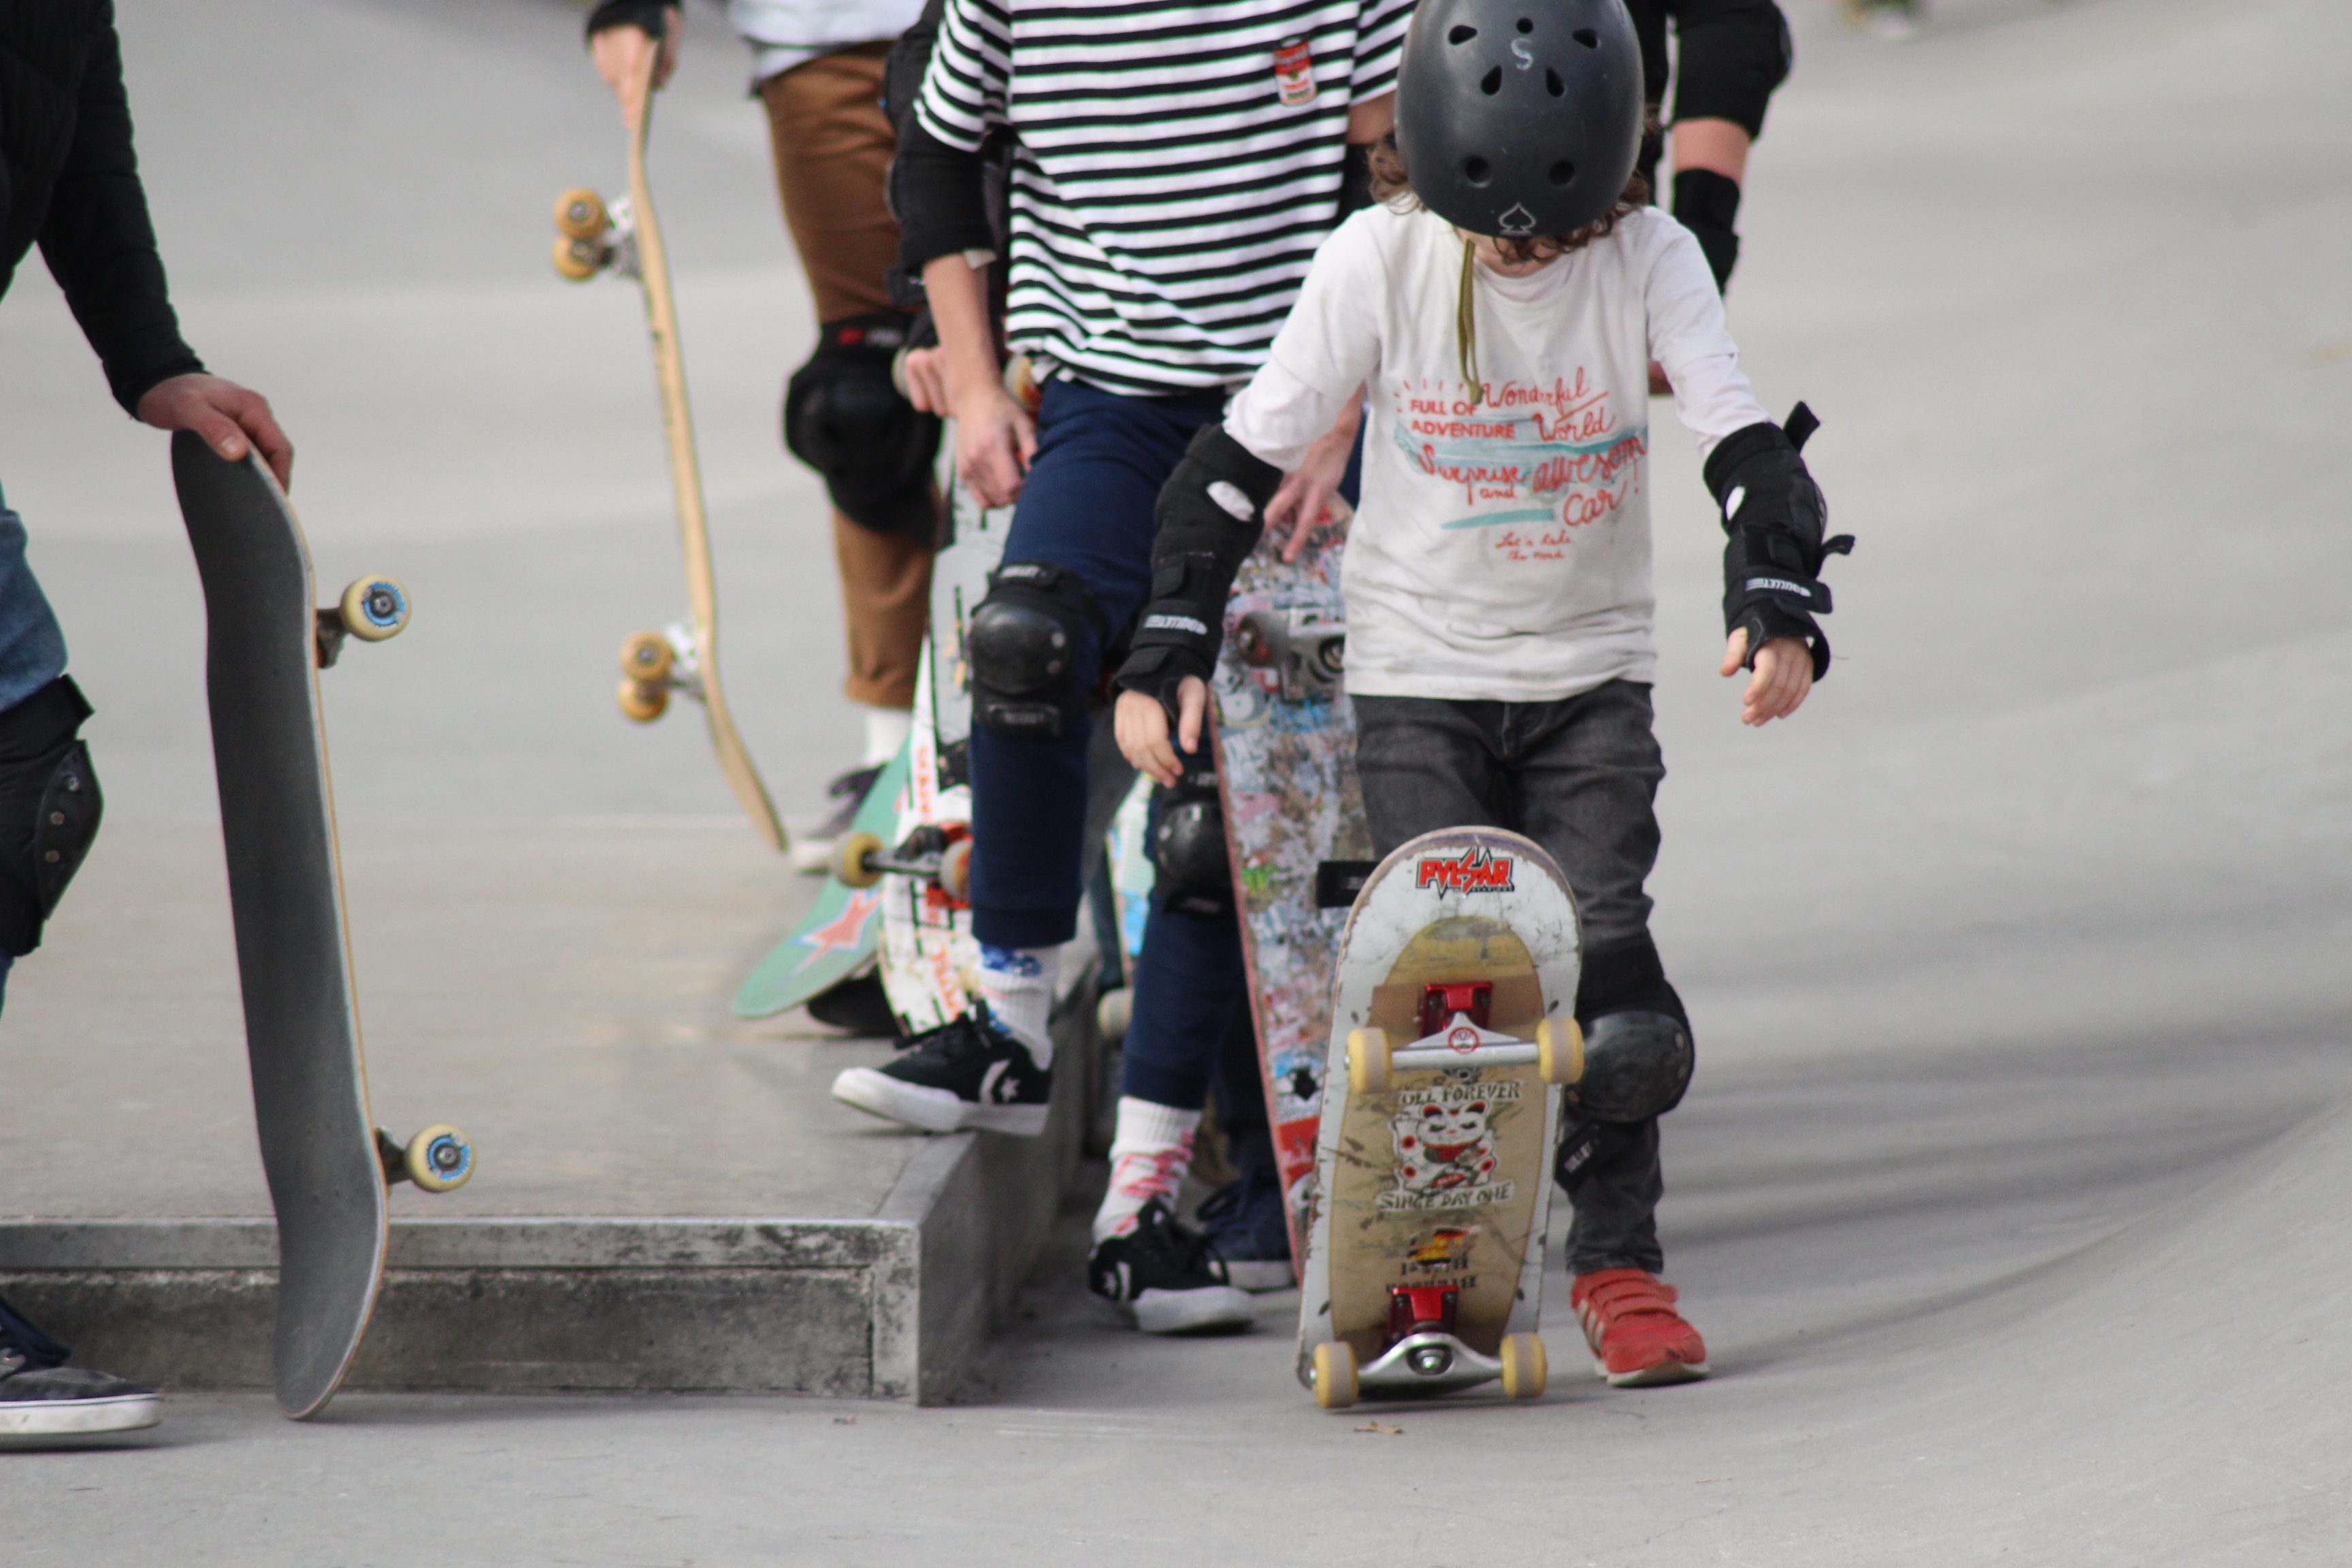 Reportage : suivez un cours de skateboard pour enfant en vidéo - Citizenkid